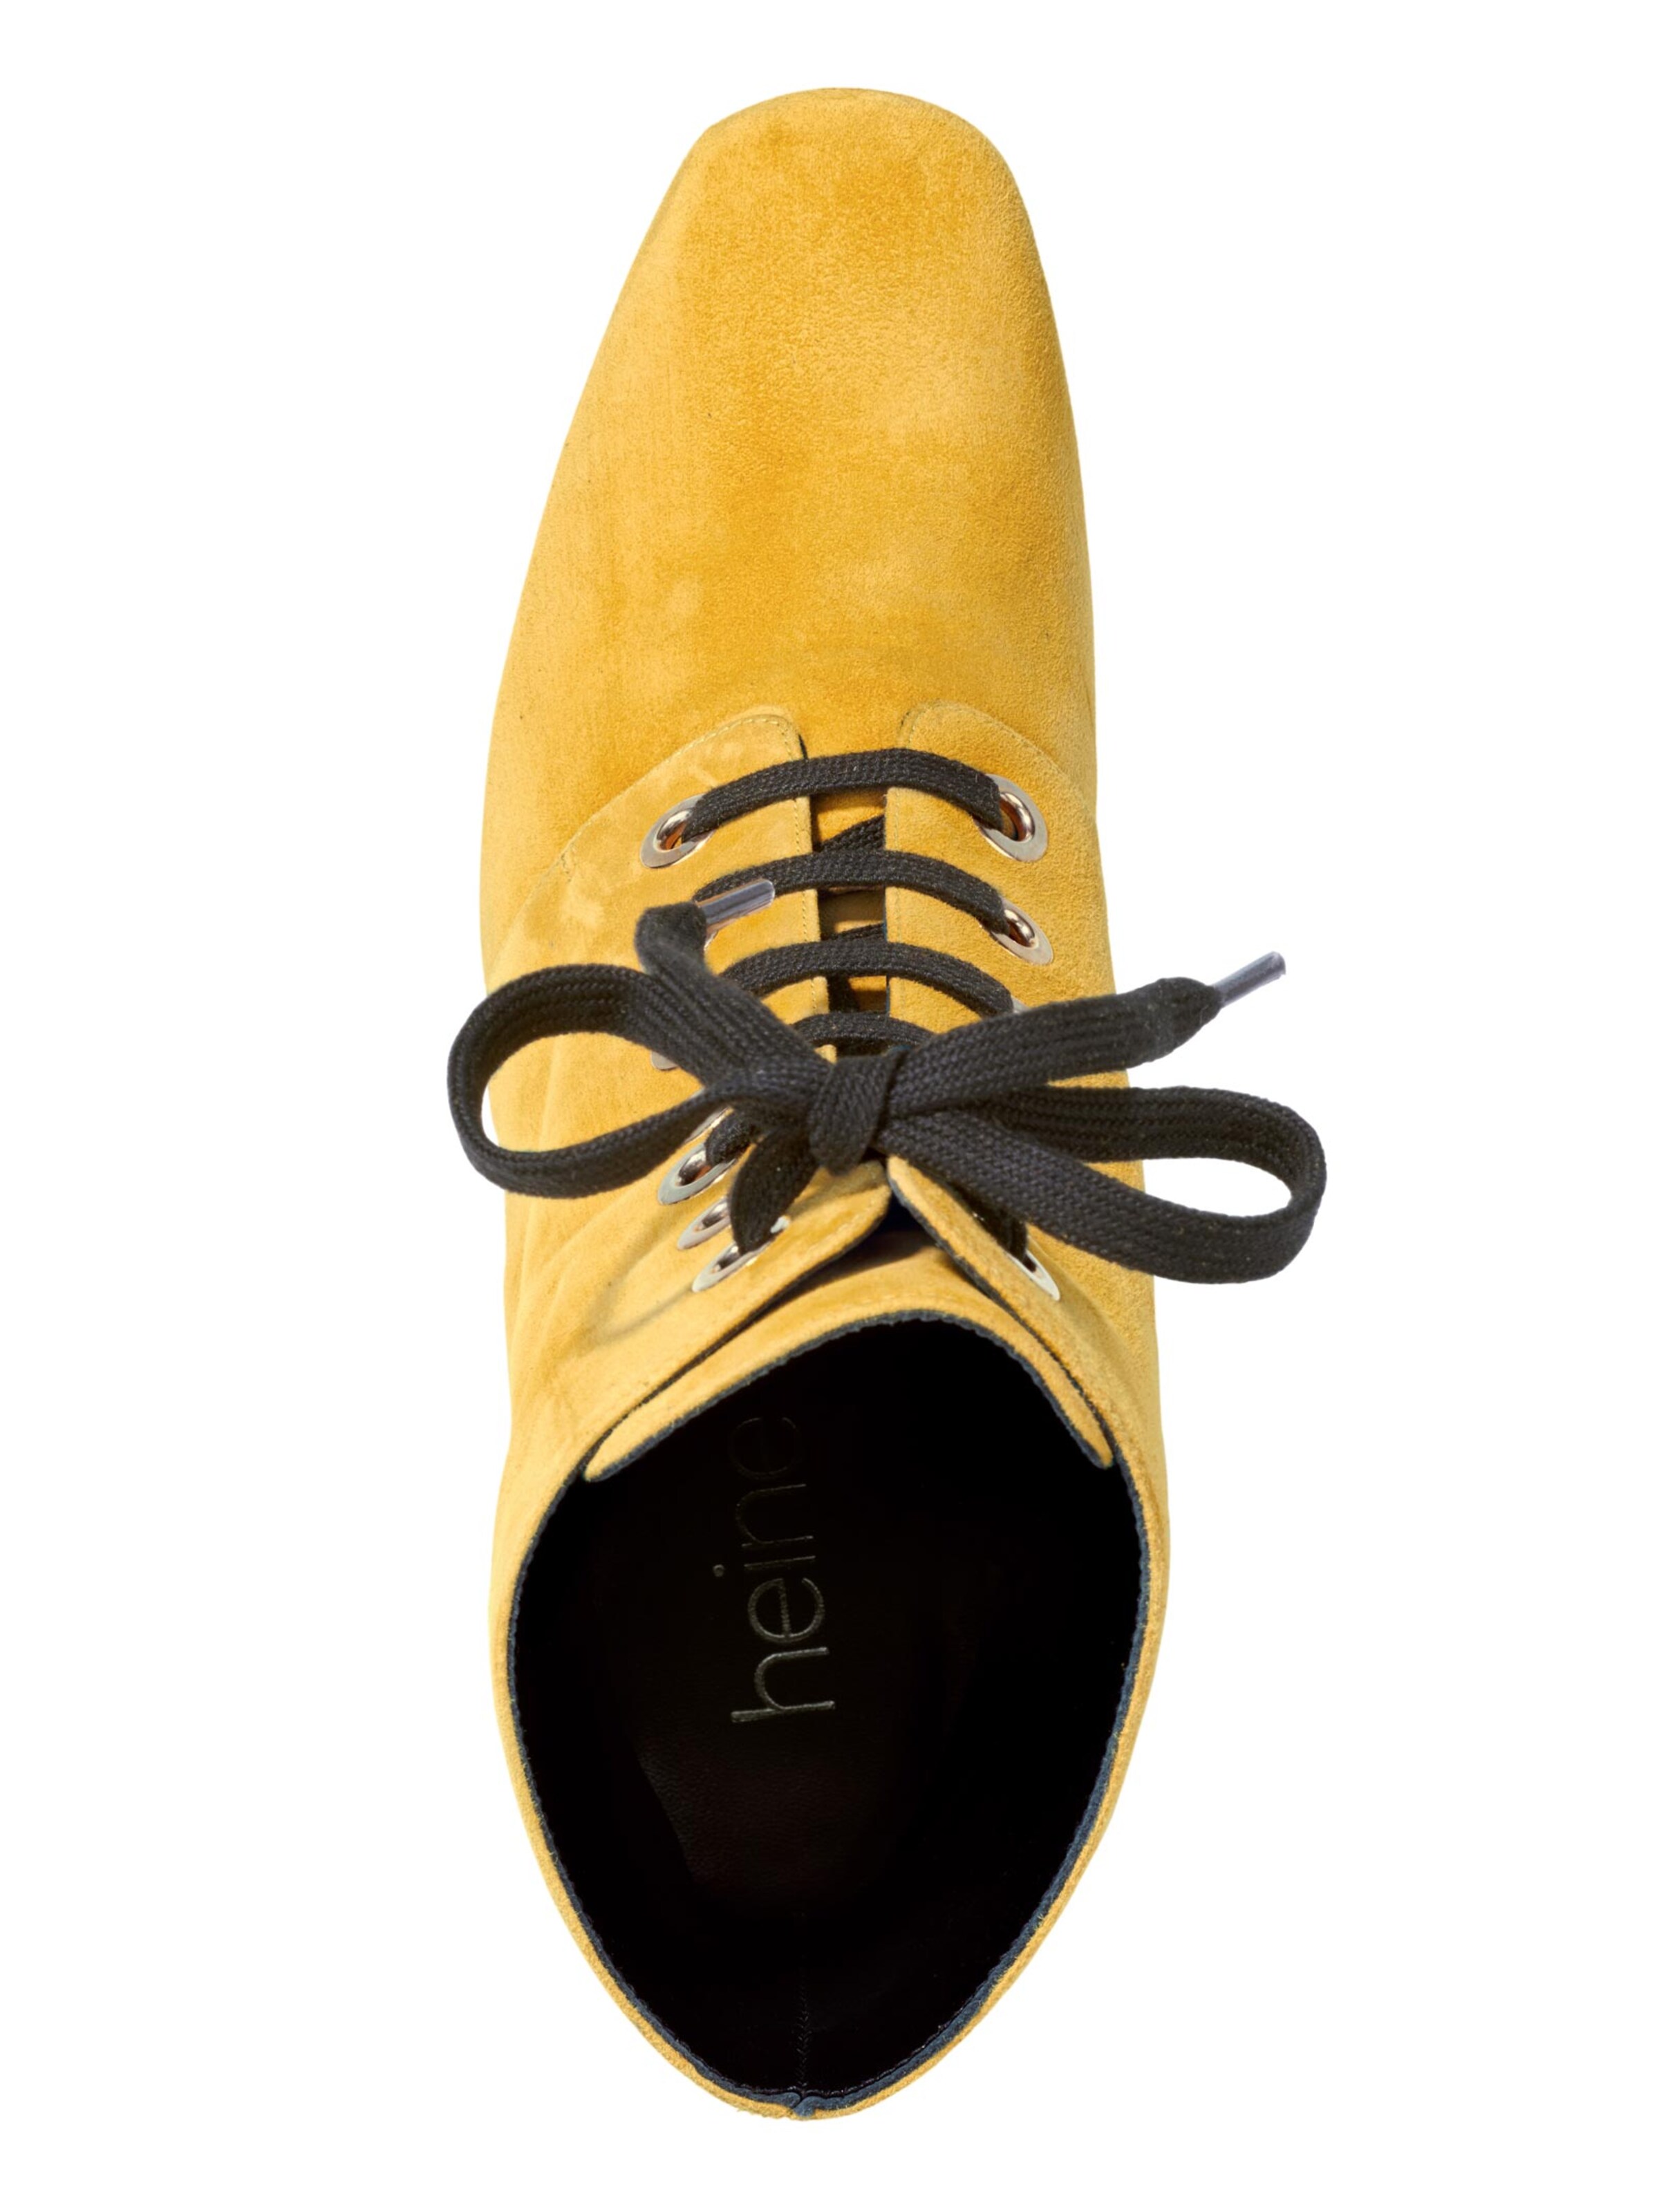 Schuhe Stiefeletten heine Schnürstiefelette in gelb 